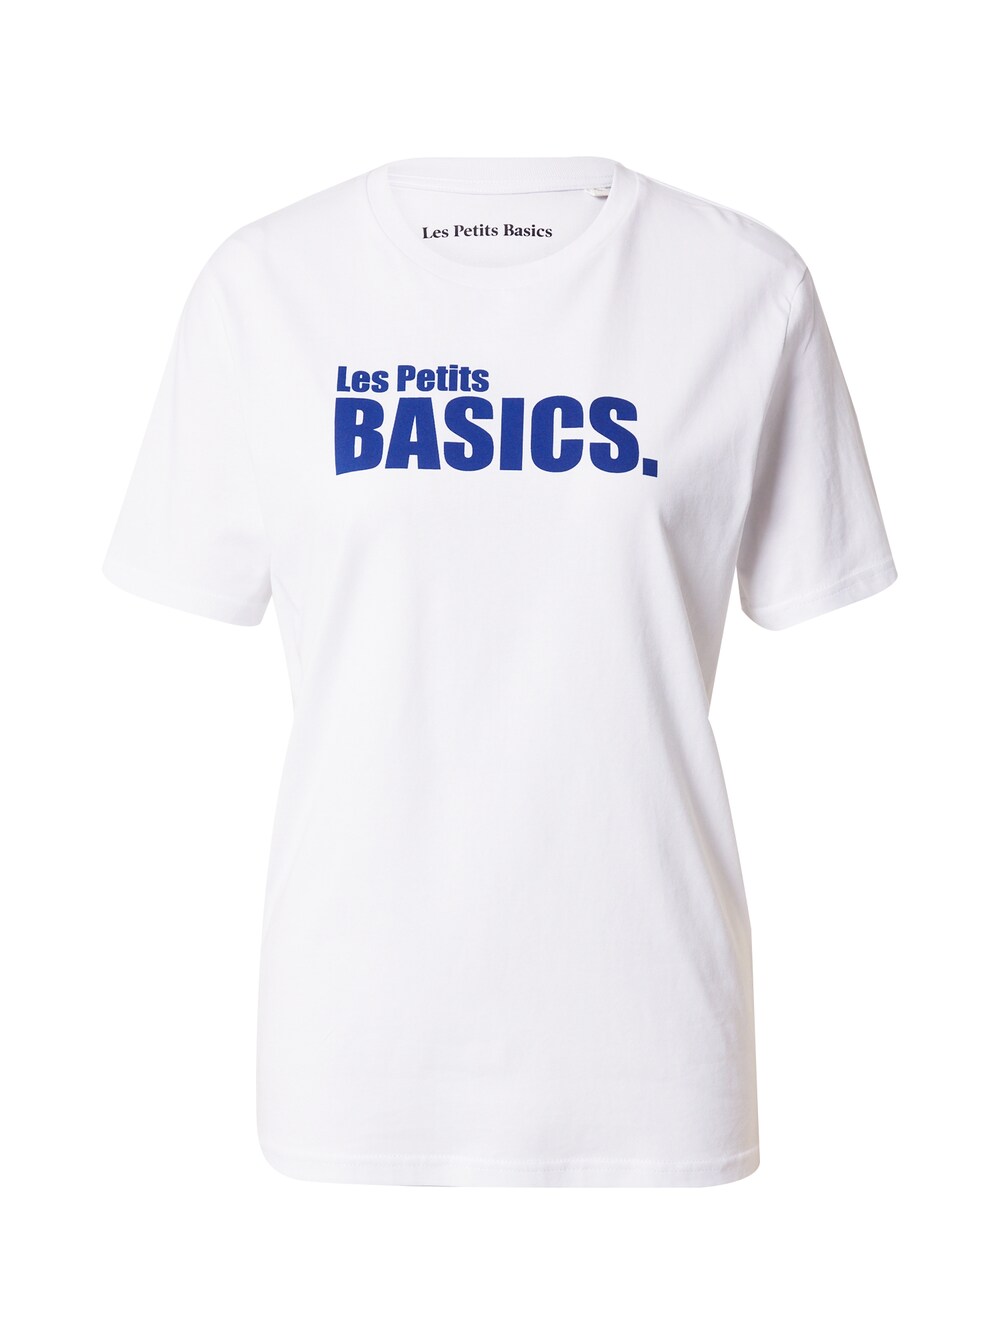 Рубашка Les Petits Basics, белый les petits basics футболка